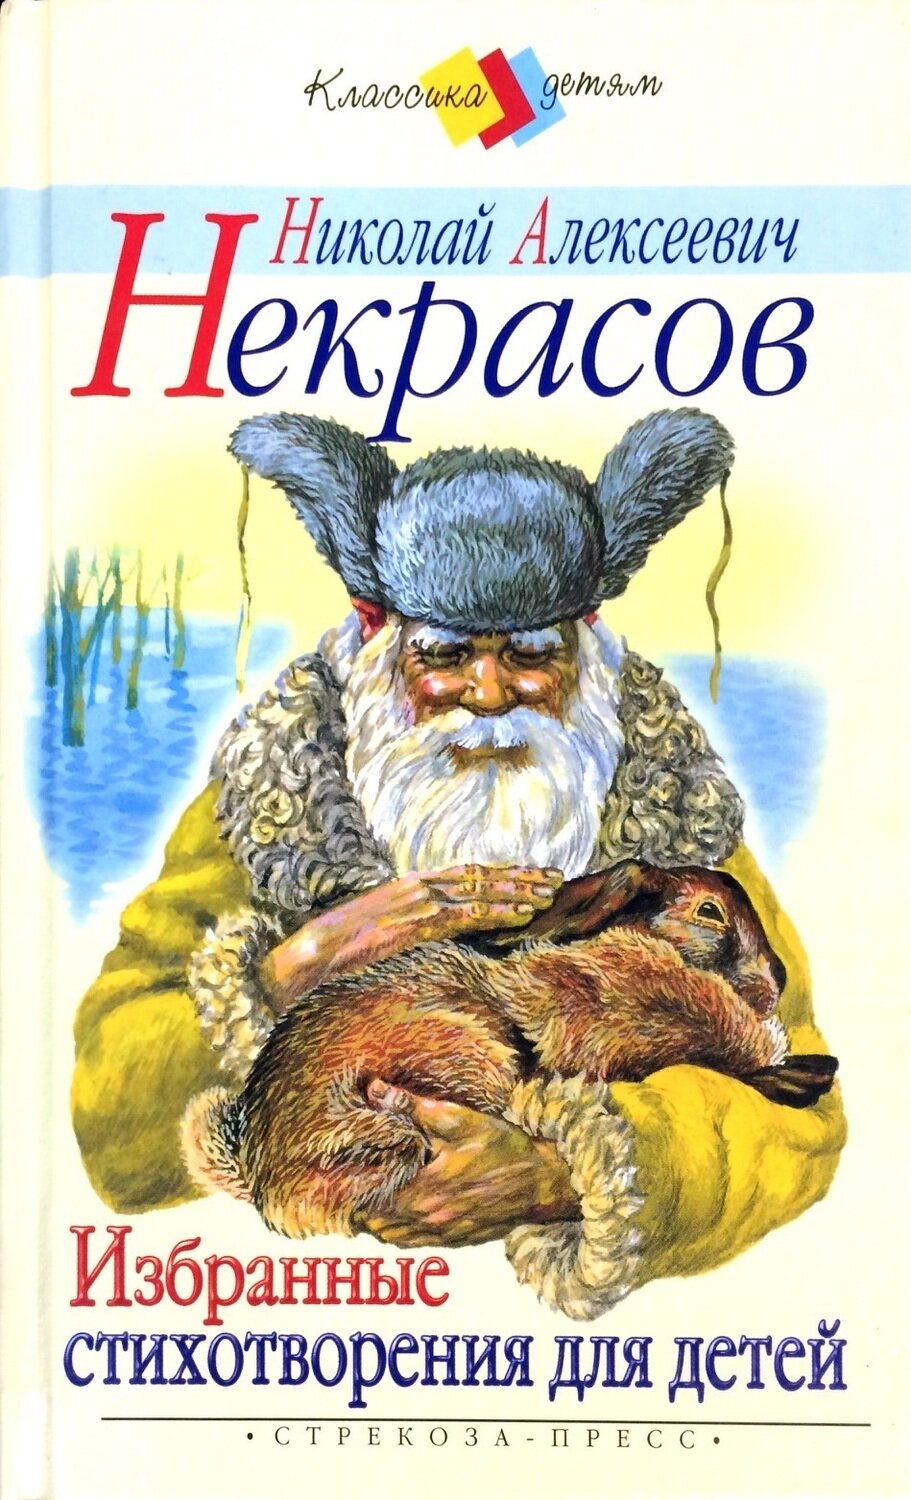 Обложки книг Некрасова